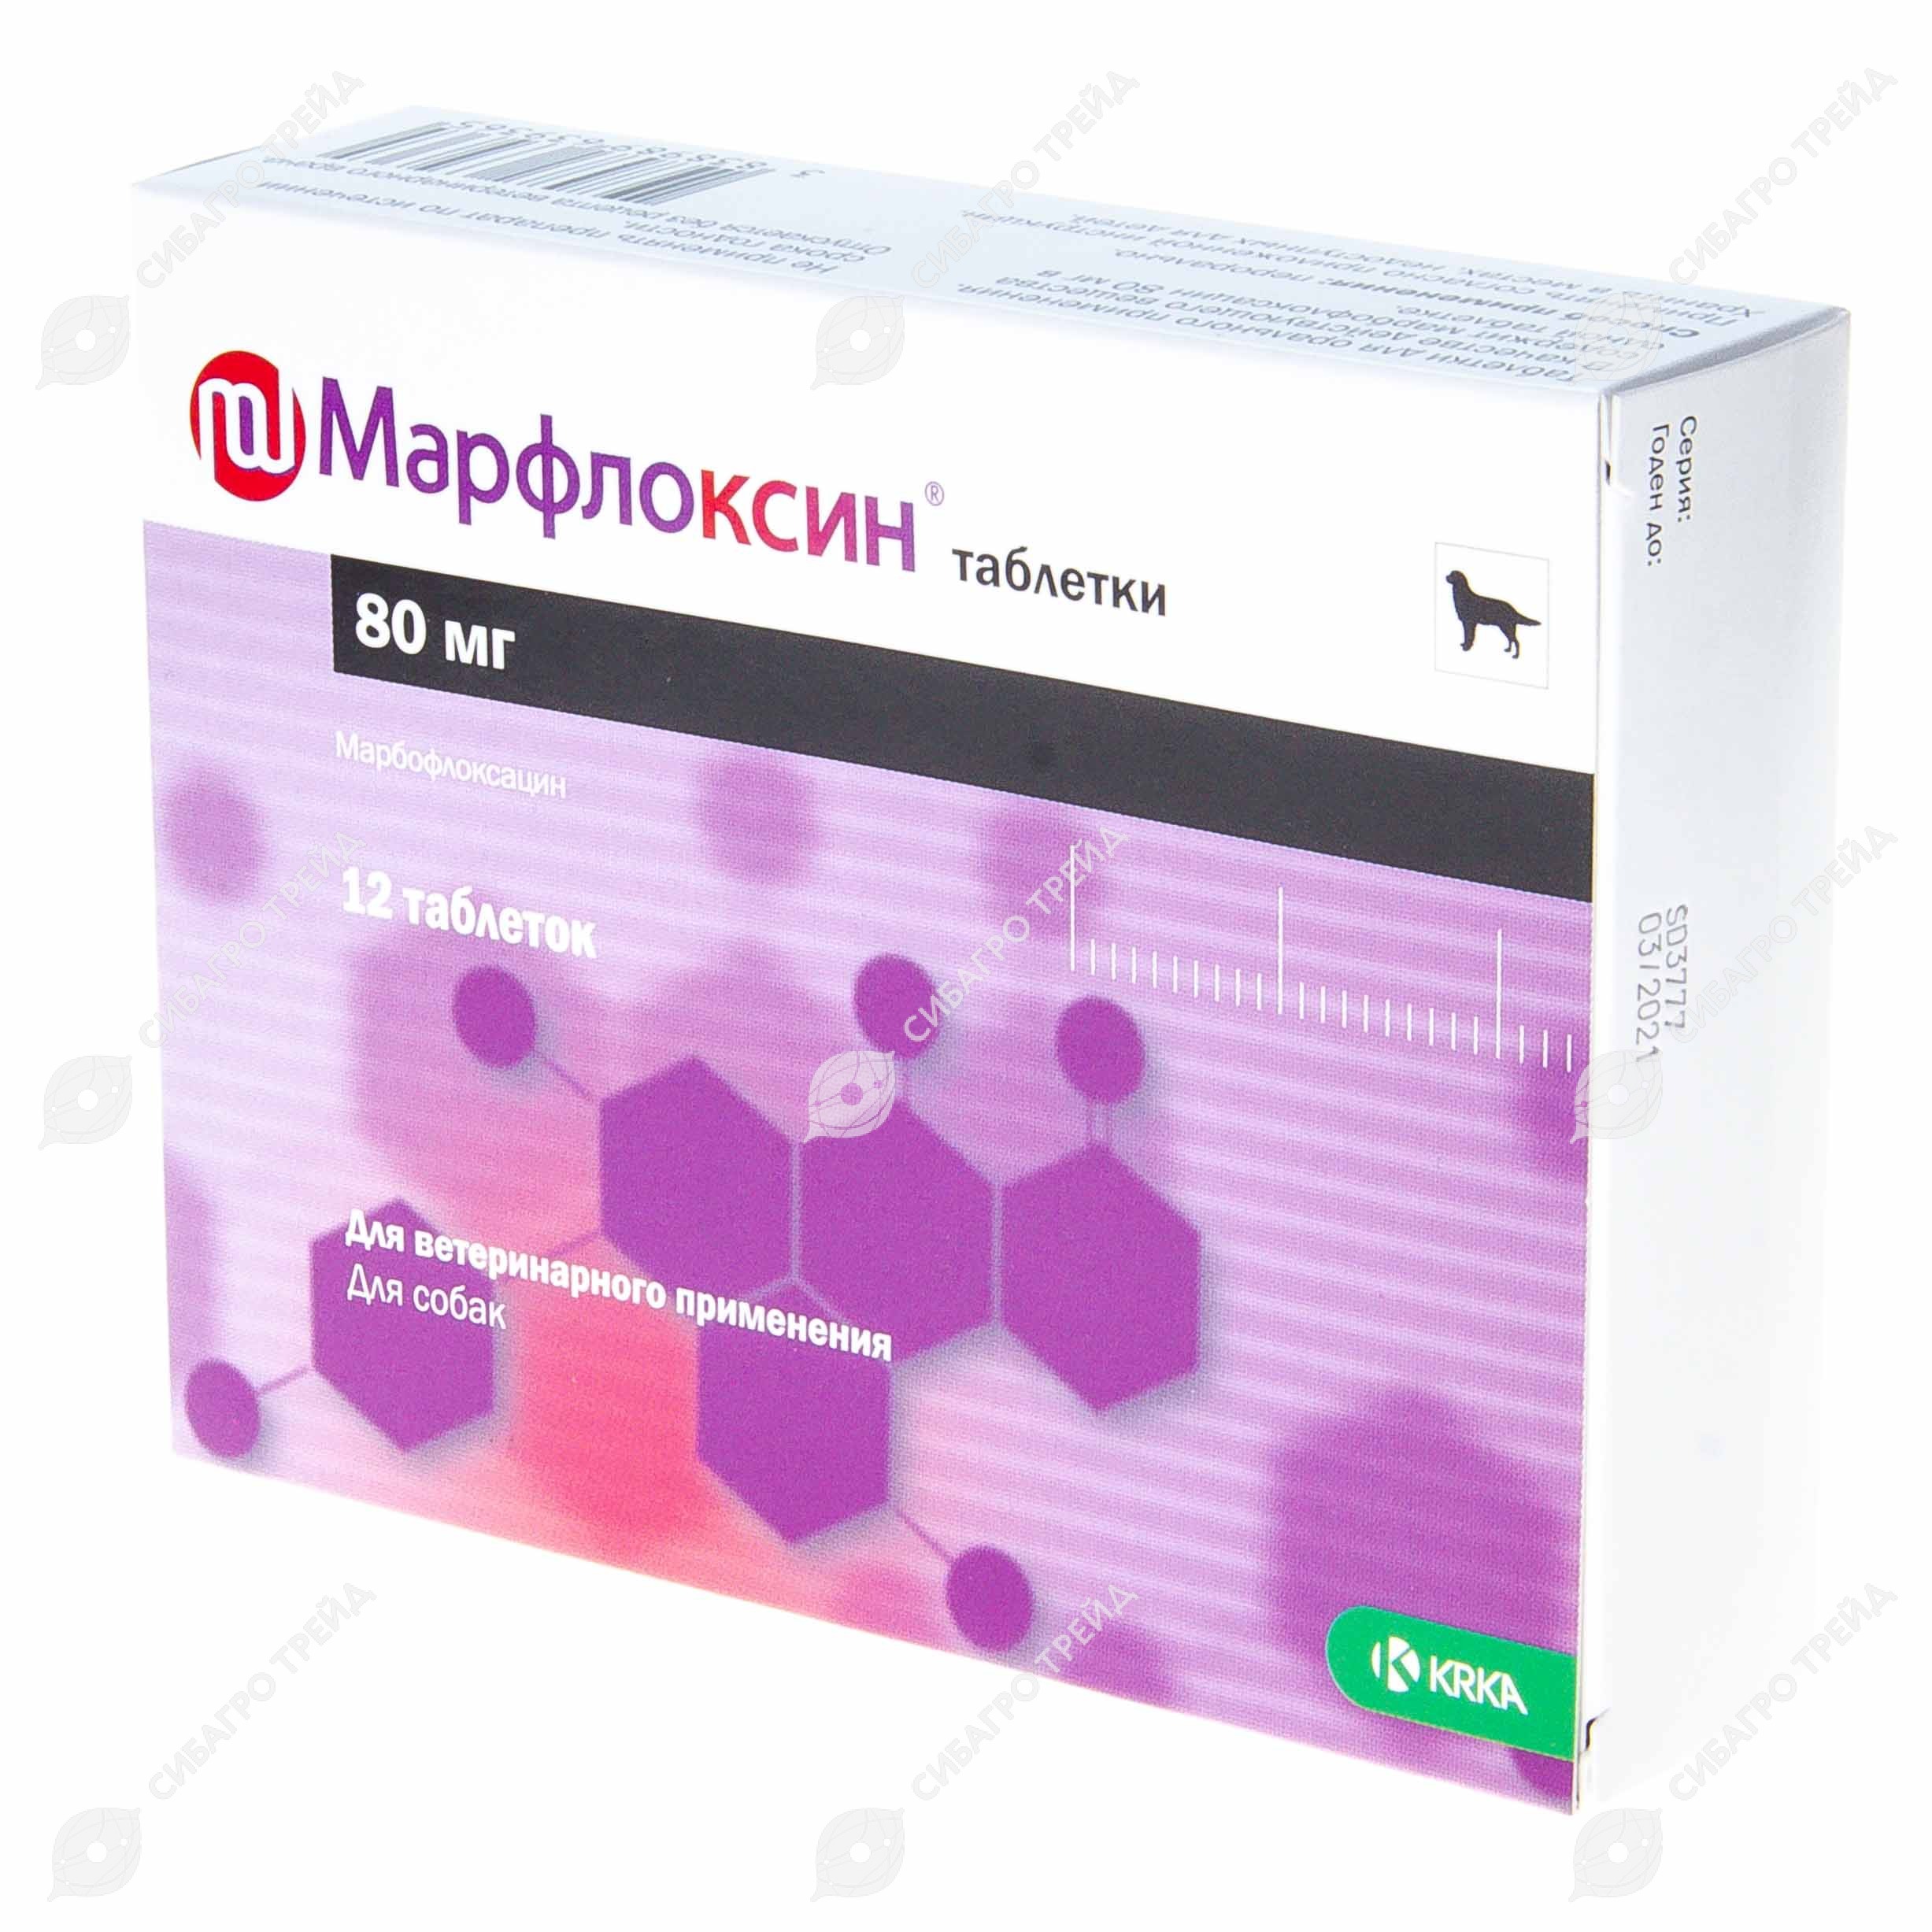 Марфлоксин (марбофлоксацин) для собак и кошек. актуальный противомикробный препарат для ветеринарии